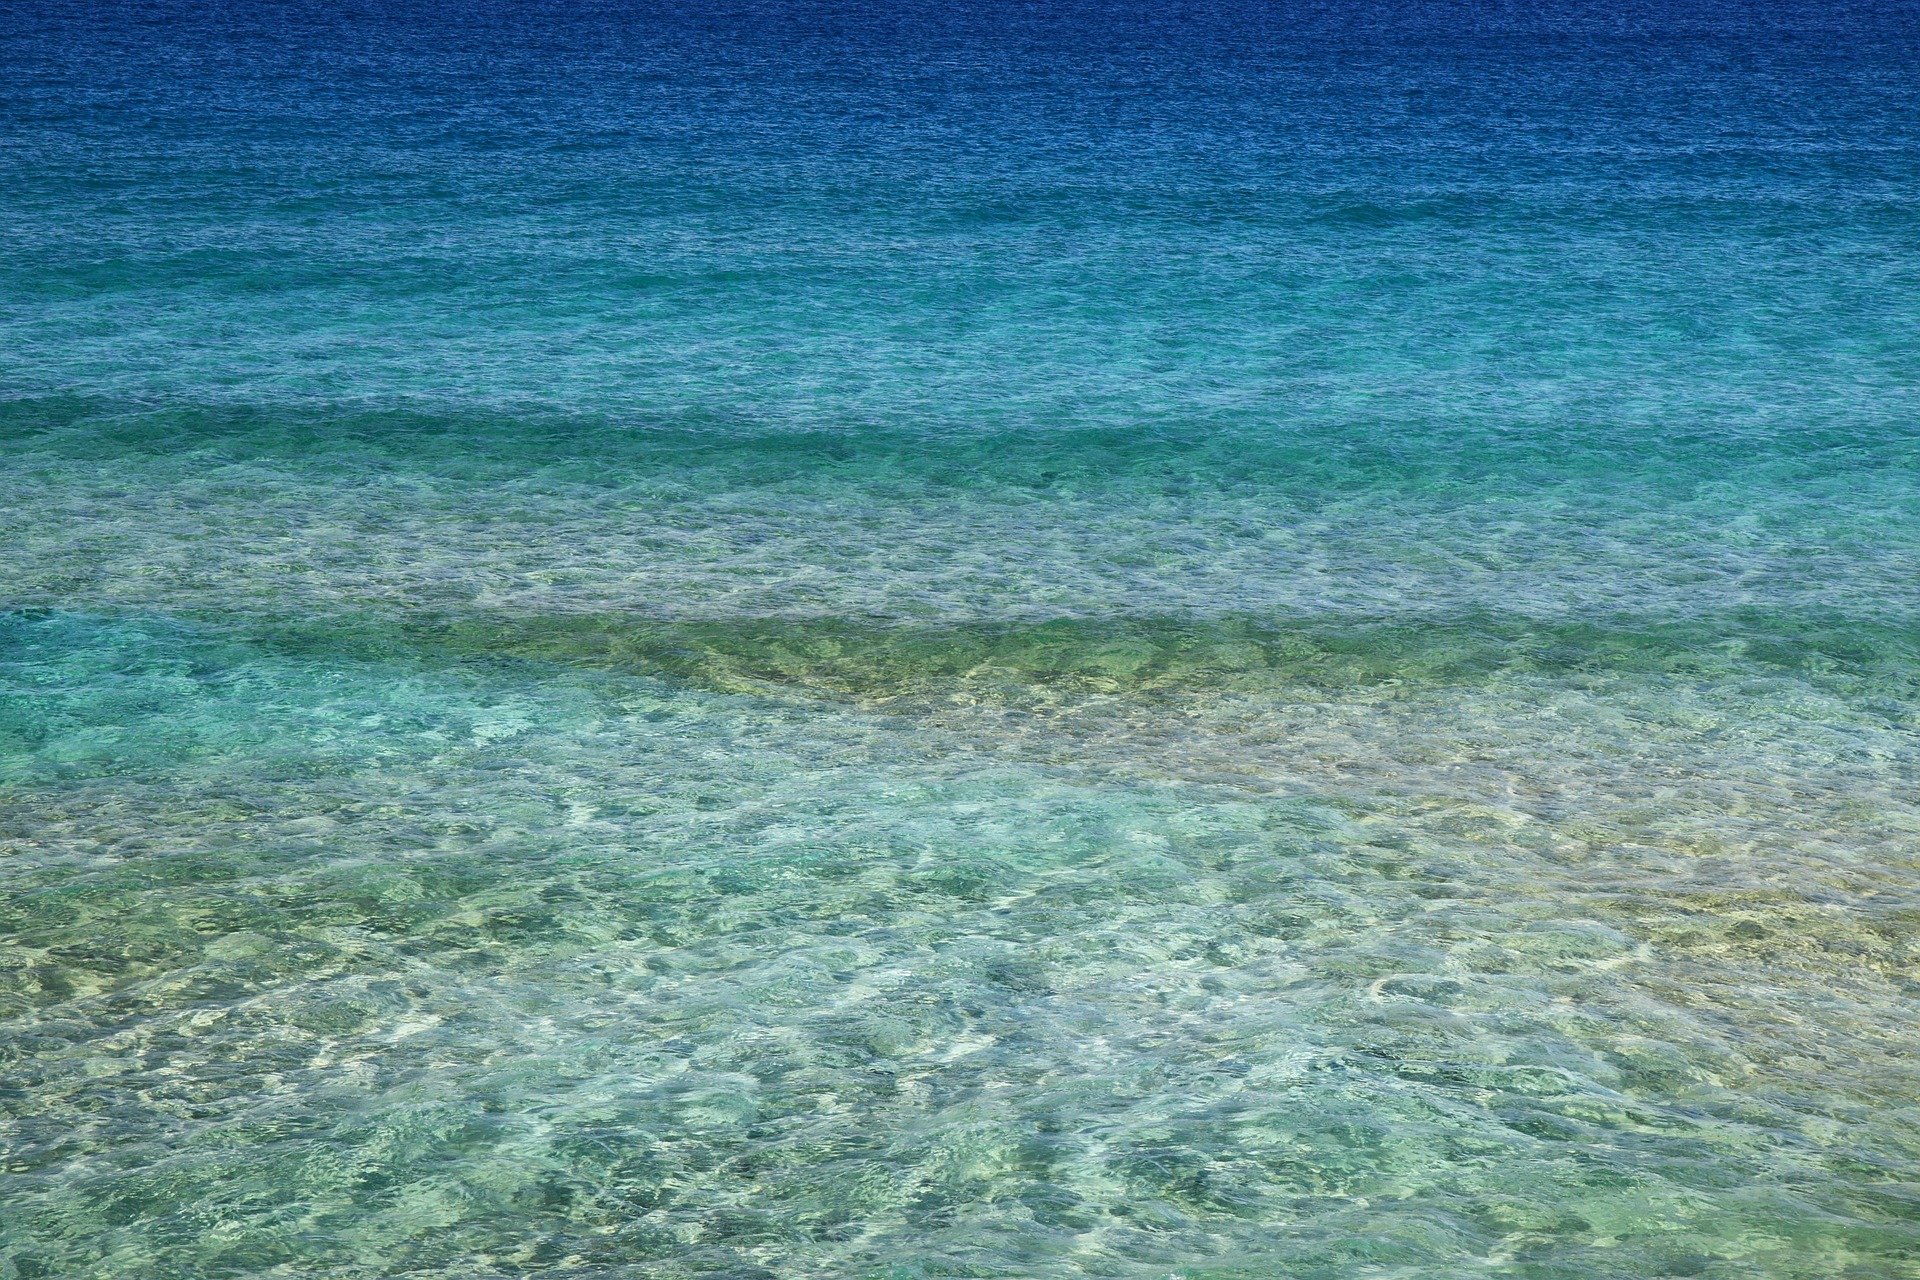 Turquoise coloured sea